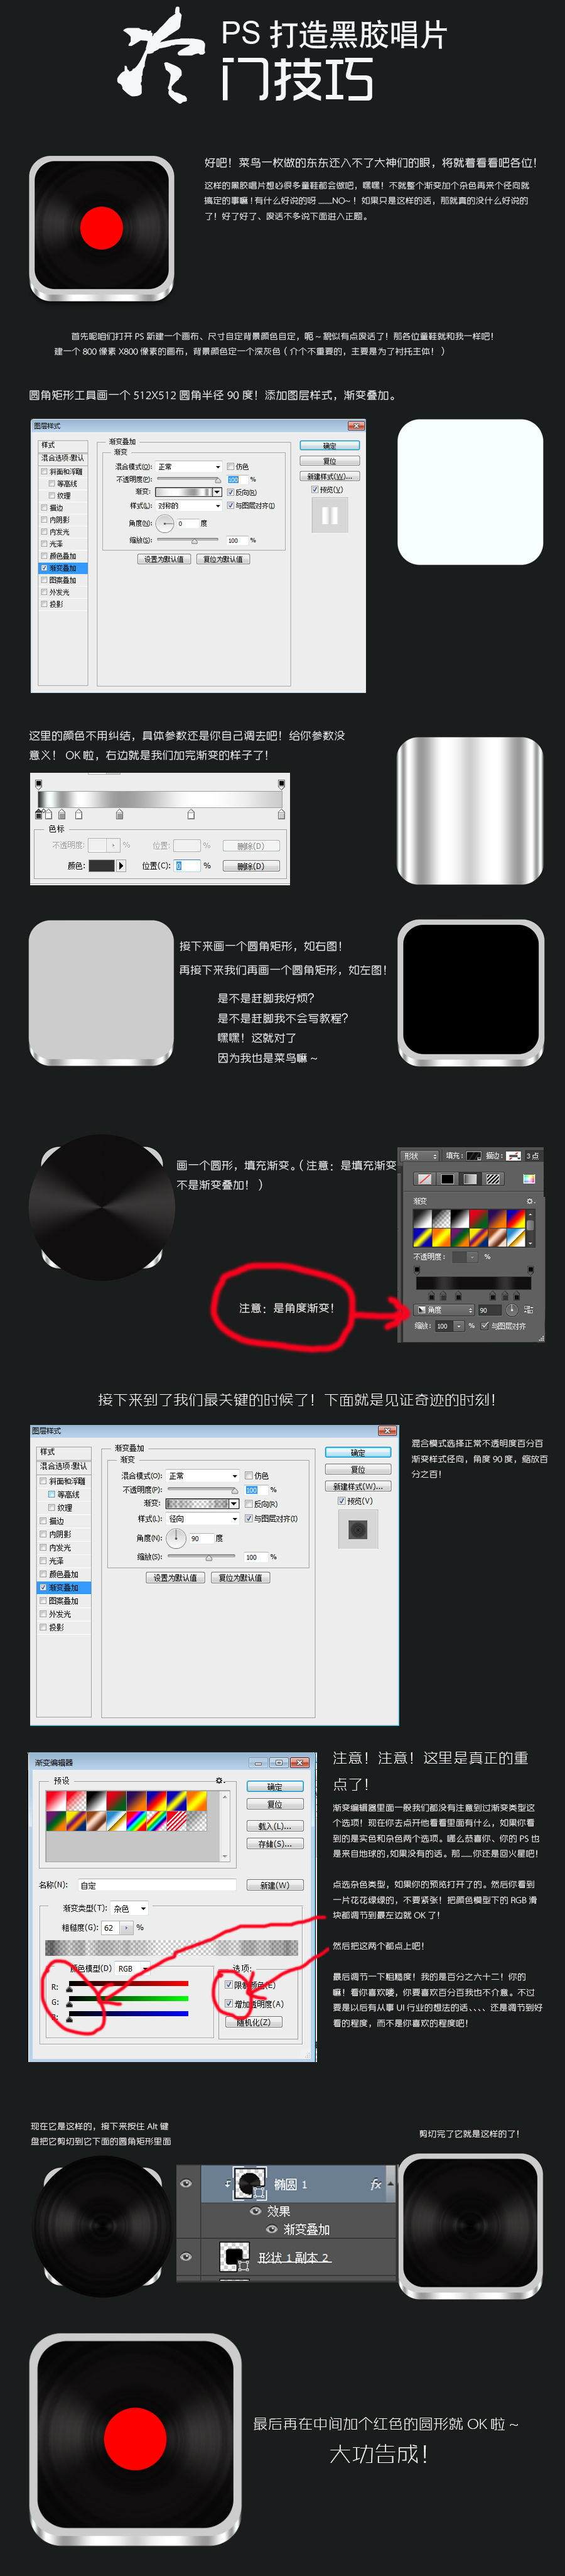 Photoshop cc设计唱片UI图标教程